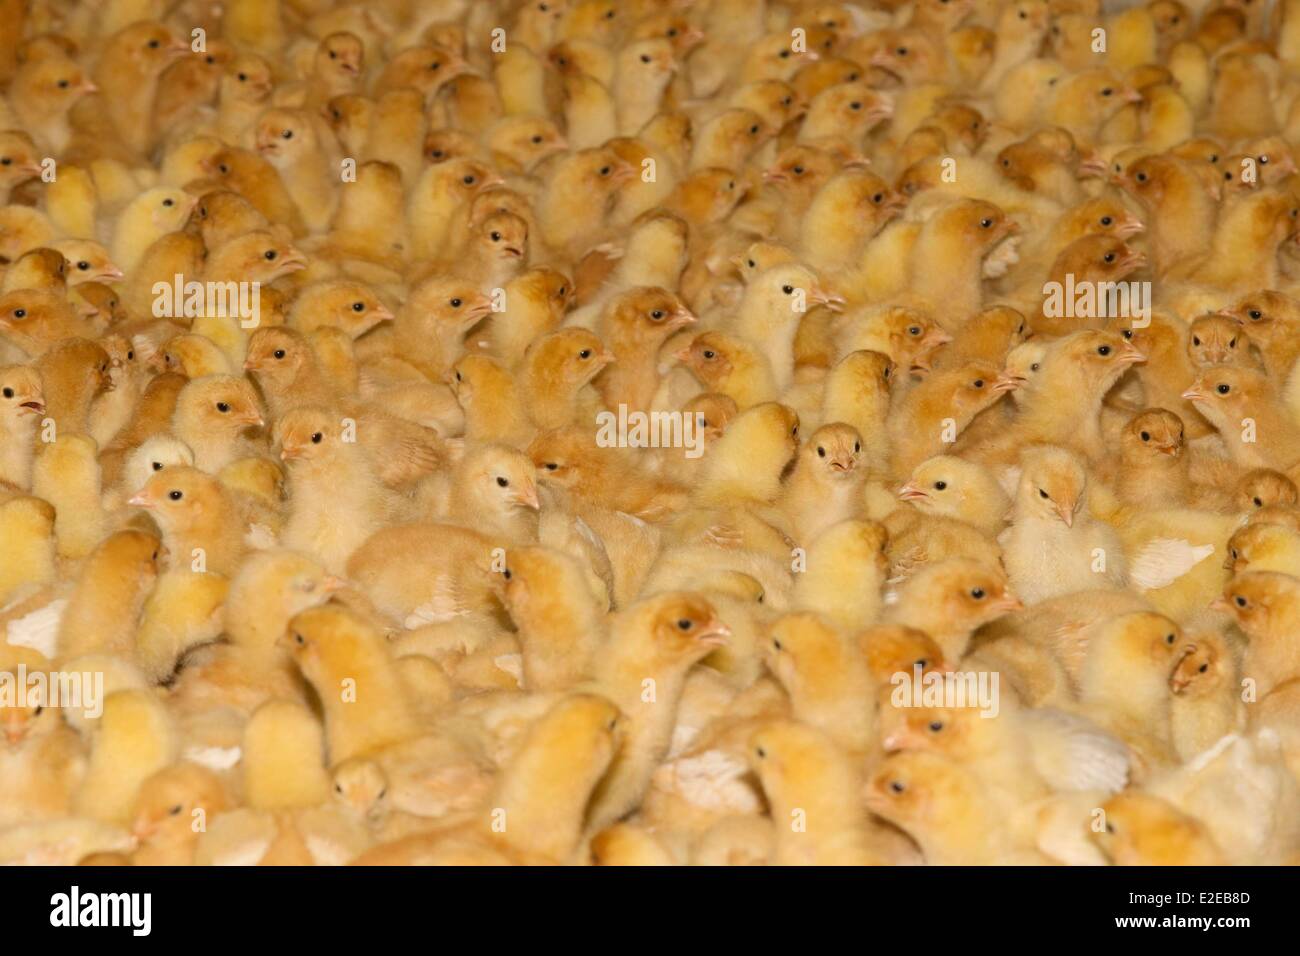 Francia, Bas Rhin, Siegen, la avicultura, la cría de pollos de engorde Foto de stock